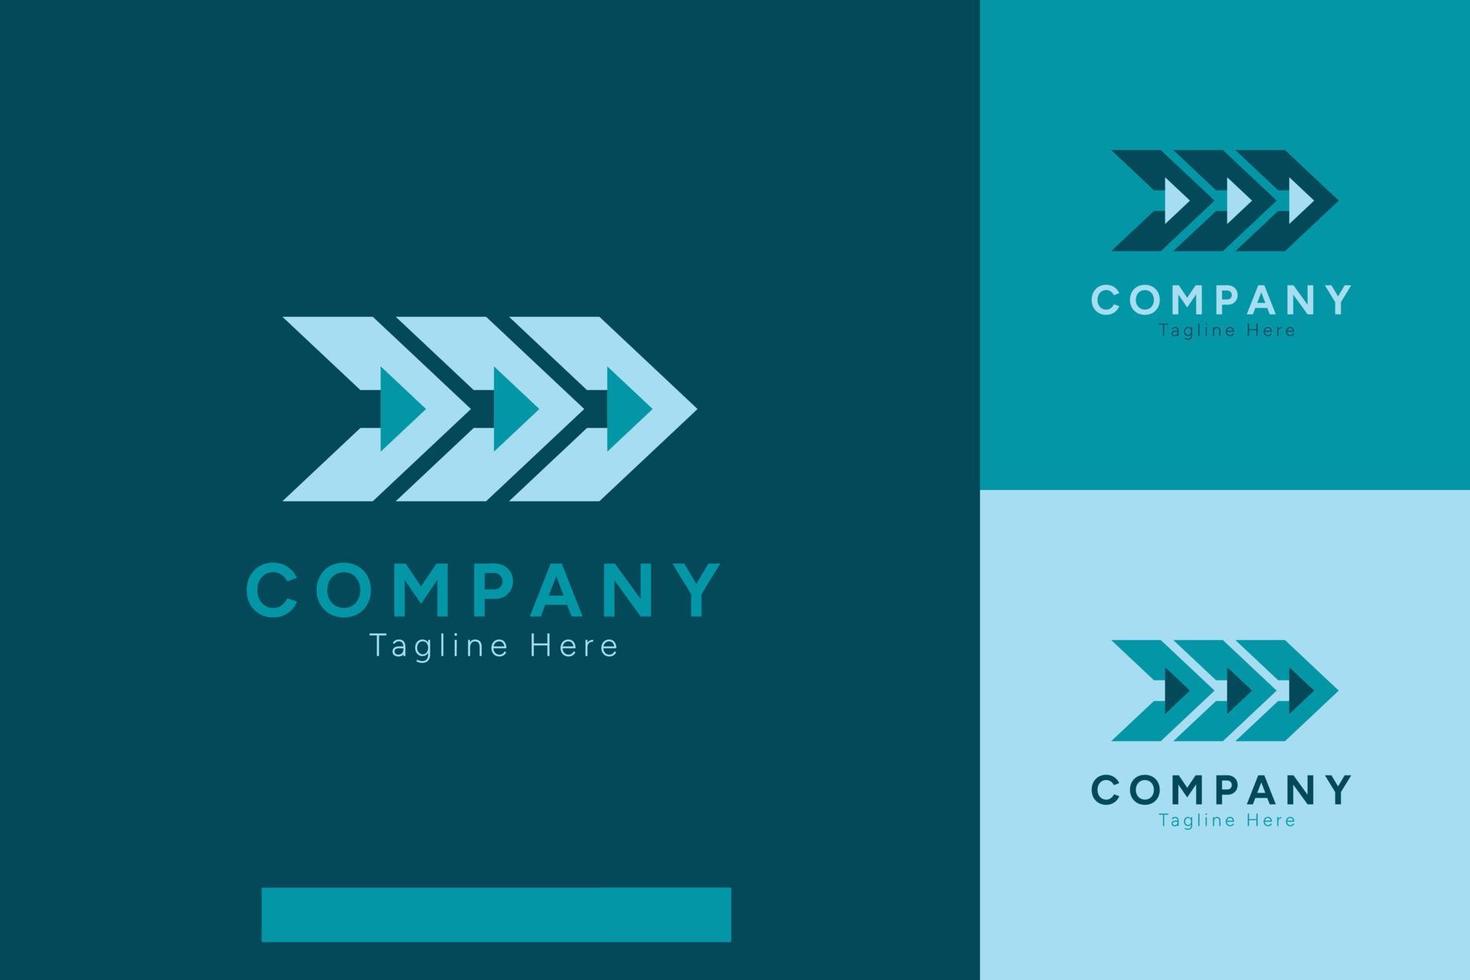 conjunto do companhia logotipo vetor Projeto modelos com diferente cor estilos